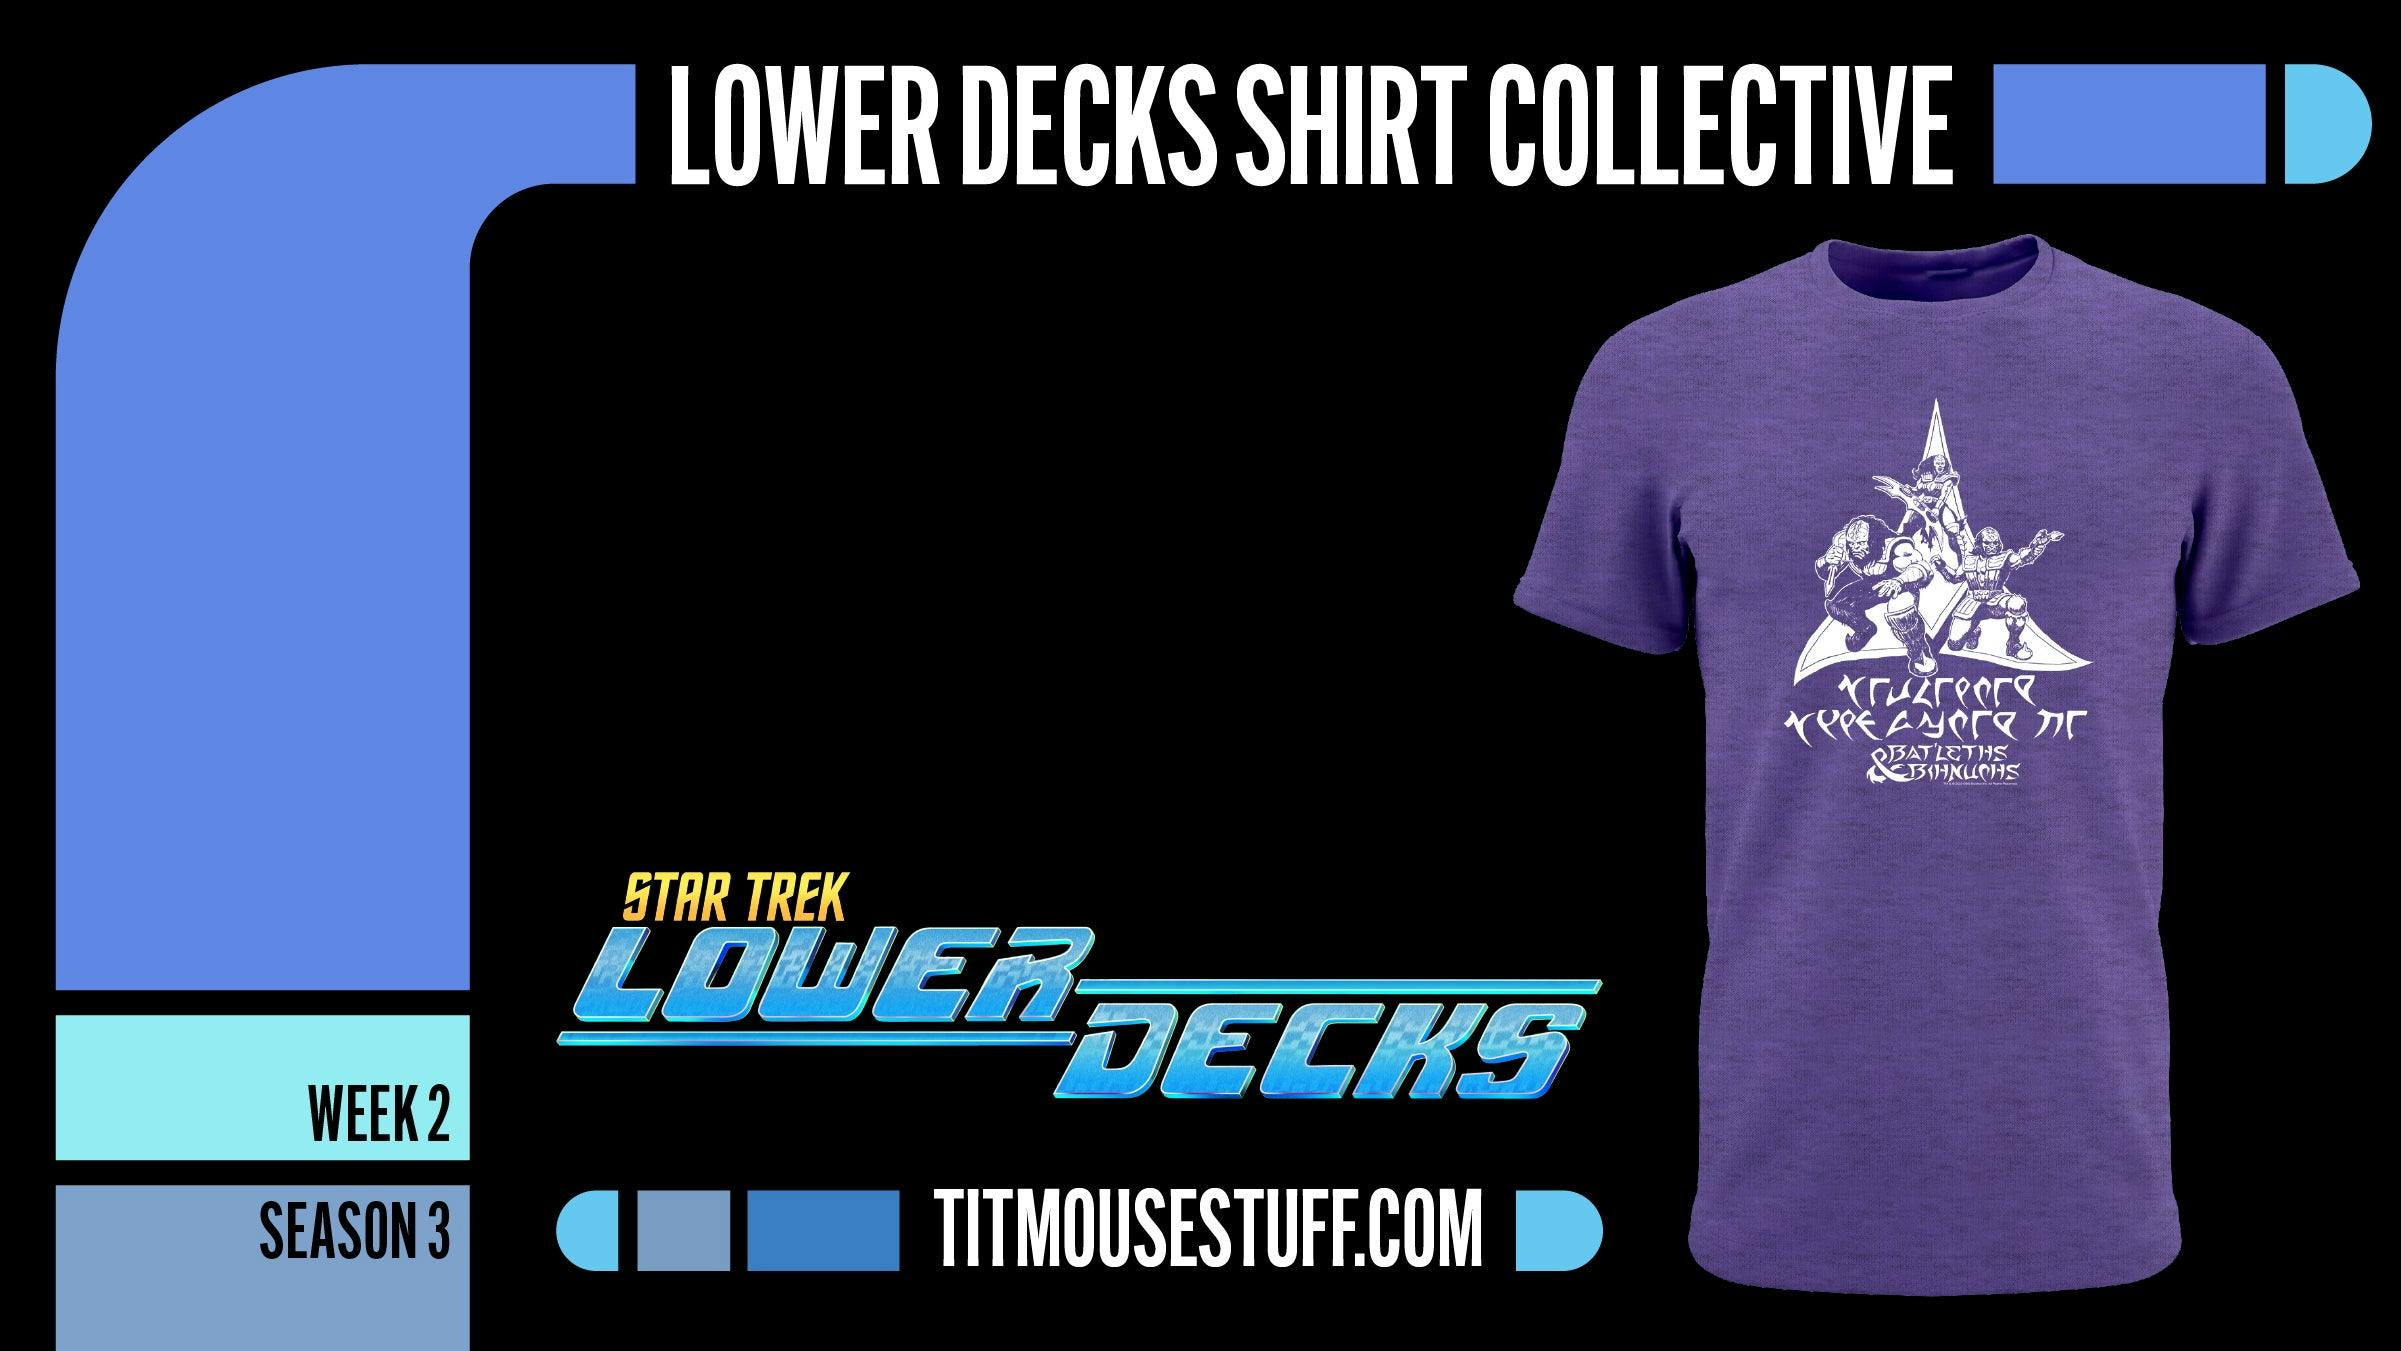 Star Trek: Lower Decks T-Shirt Collective - Week 2